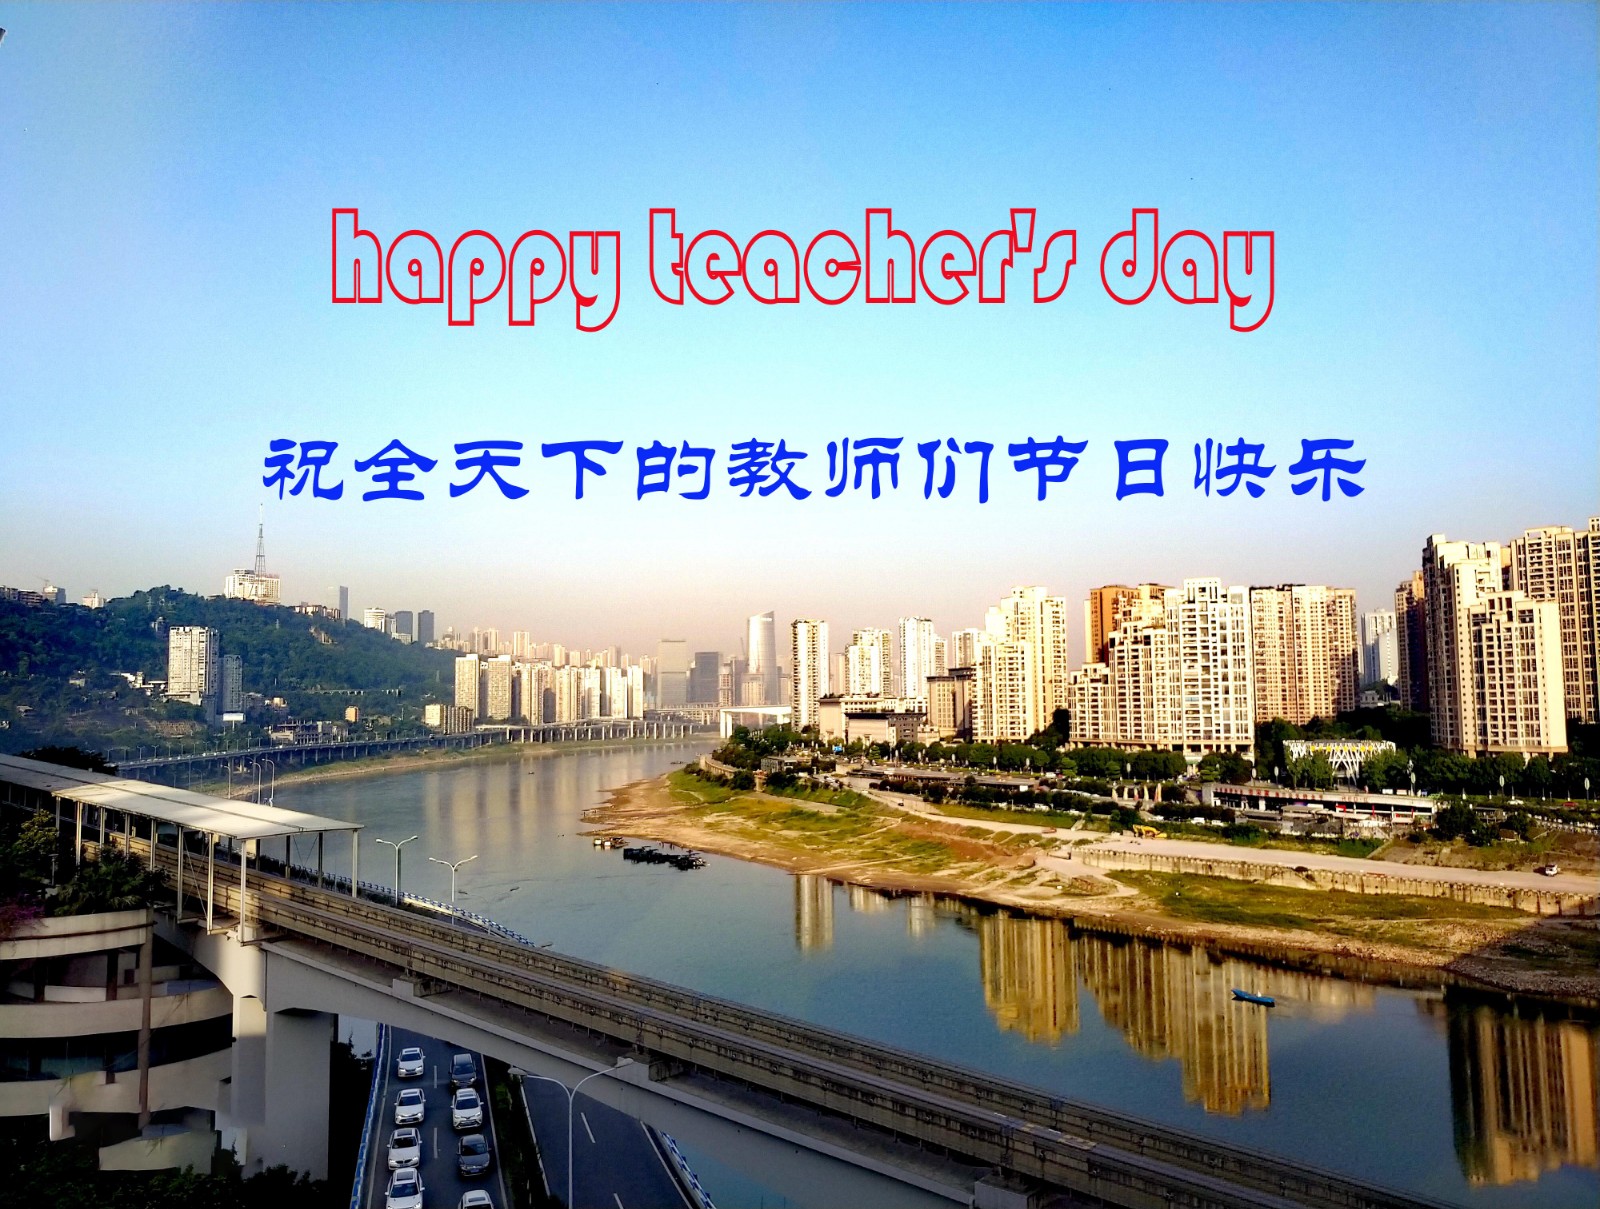 祝老师节日快乐的祝福图片